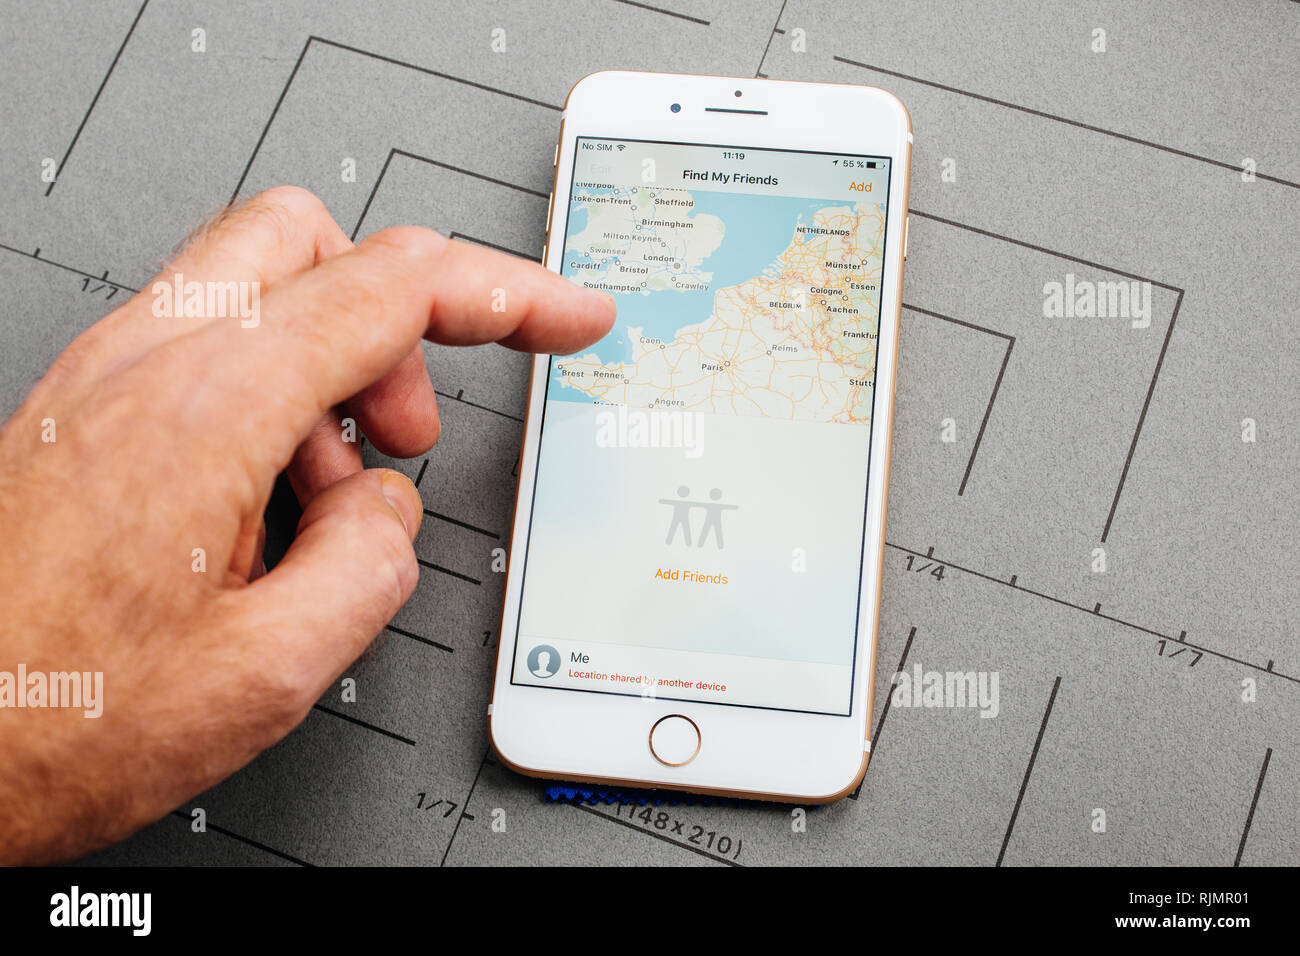 Spionage-App für das iPhone - Überwachung per Handy